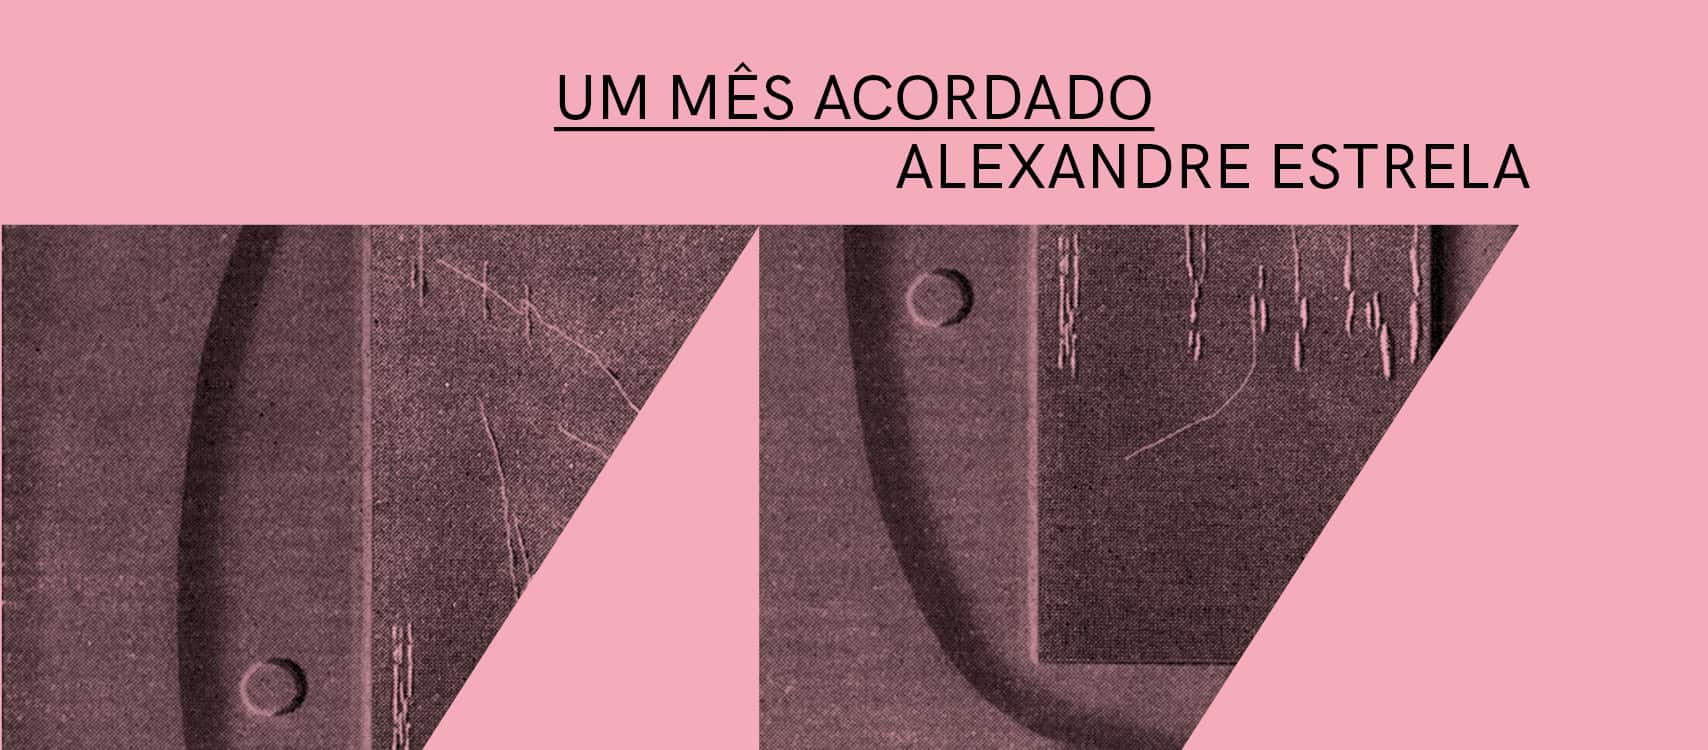 Um Mês Acordado ⟡ Exposição de Alexandre Estrela ⟡ ZDB Galeria Zé dos Bois